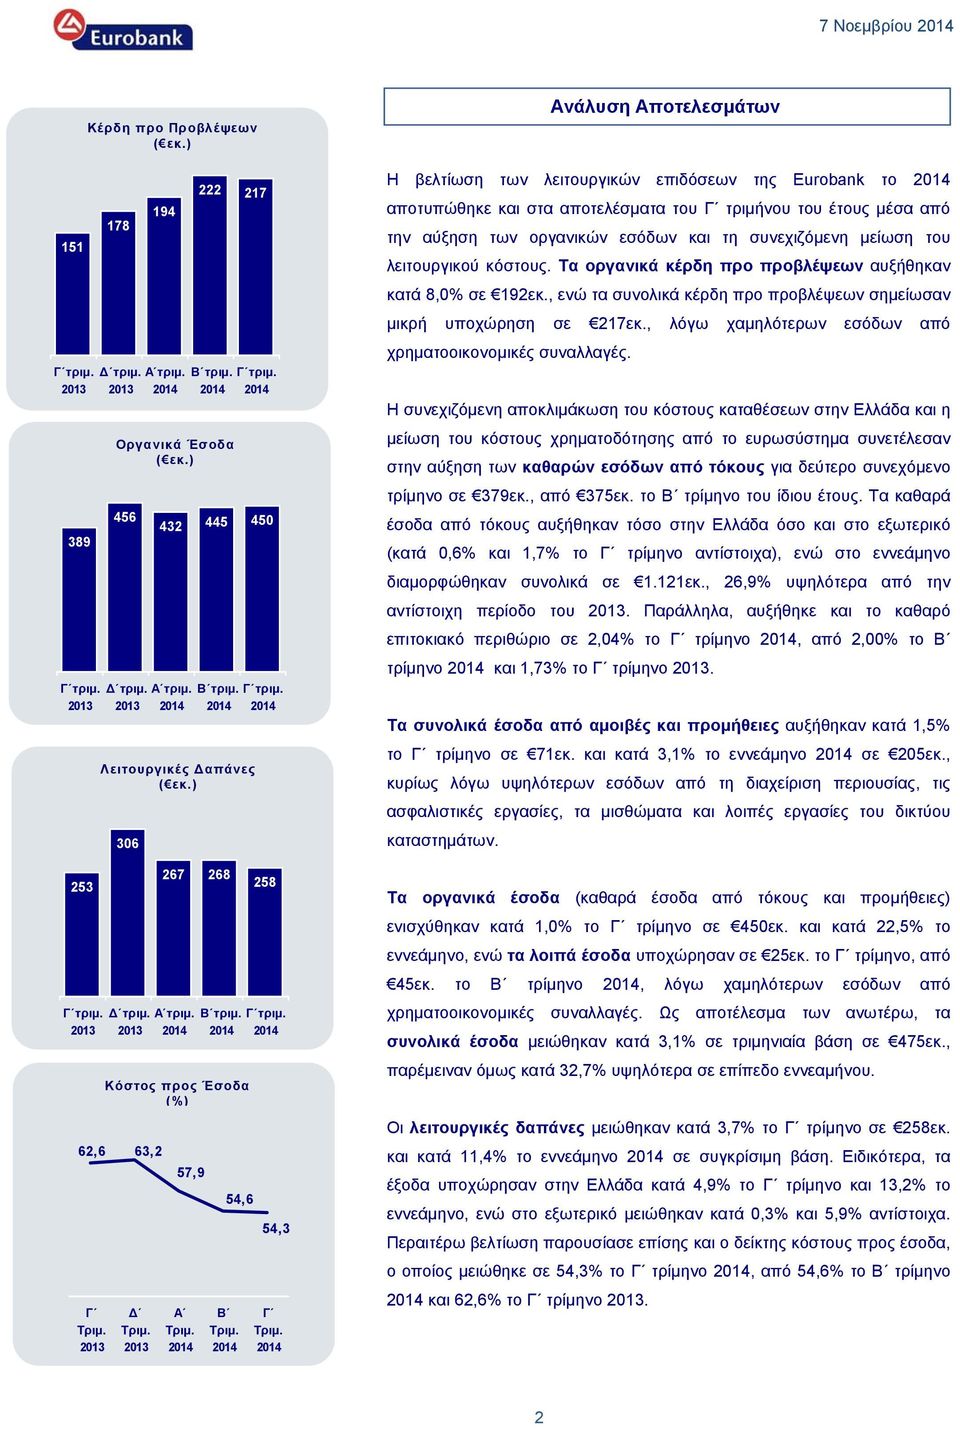 54,3 Γ Ανάλυση Αποτελεσμάτων Η βελτίωση των λειτουργικών επιδόσεων της Eurobank το αποτυπώθηκε και στα αποτελέσματα του Γ τριμήνου του έτους μέσα από την αύξηση των οργανικών εσόδων και τη